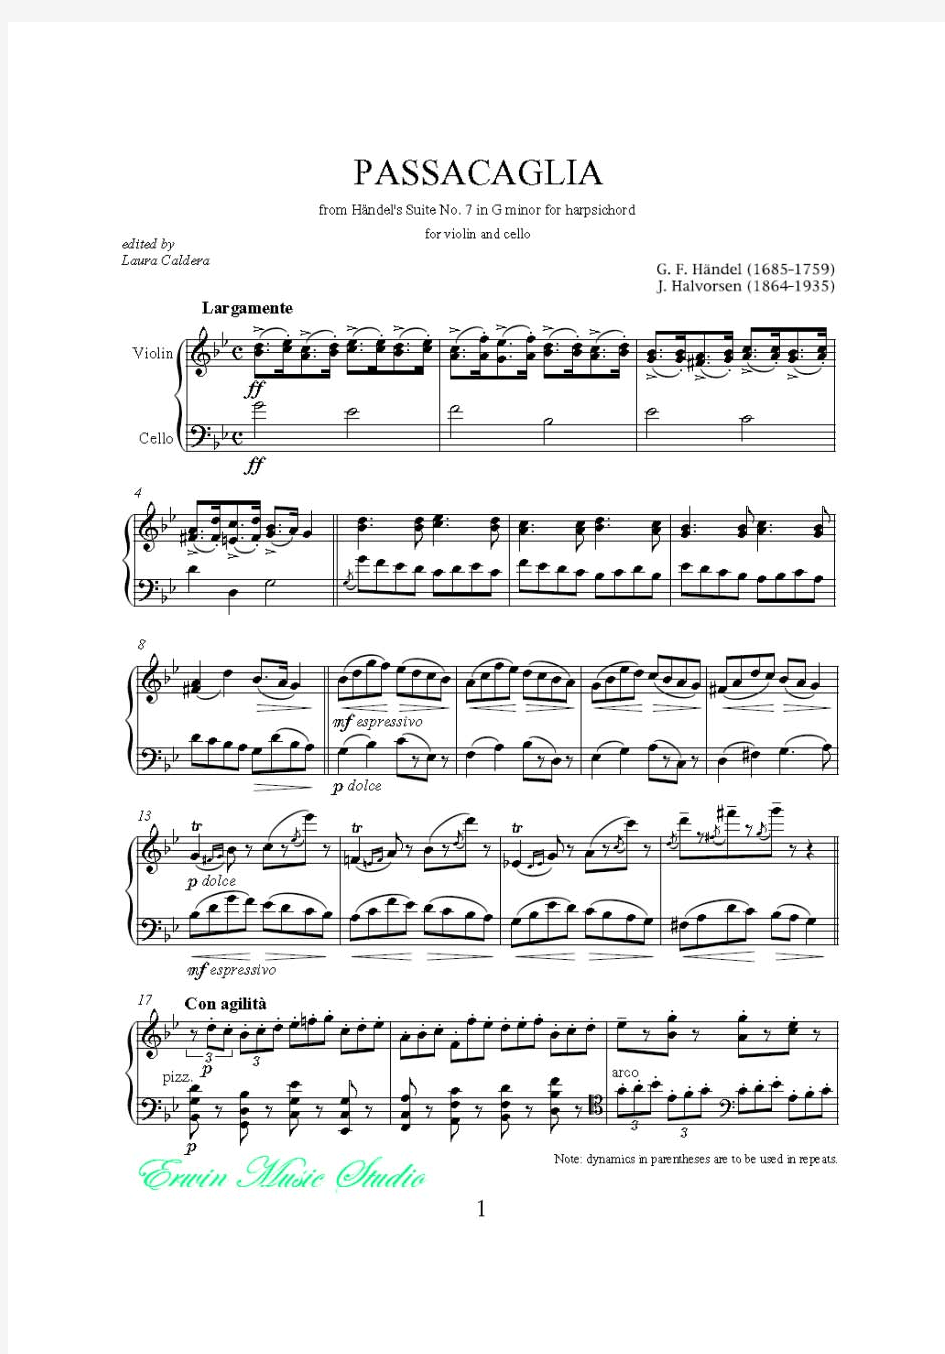 亨德尔 - J.Halvorsen 《Passacaglia 》小提琴曲谱+大提琴曲谱Va+Vc  G[1].F.Handel-J.Halvorsen - Pa